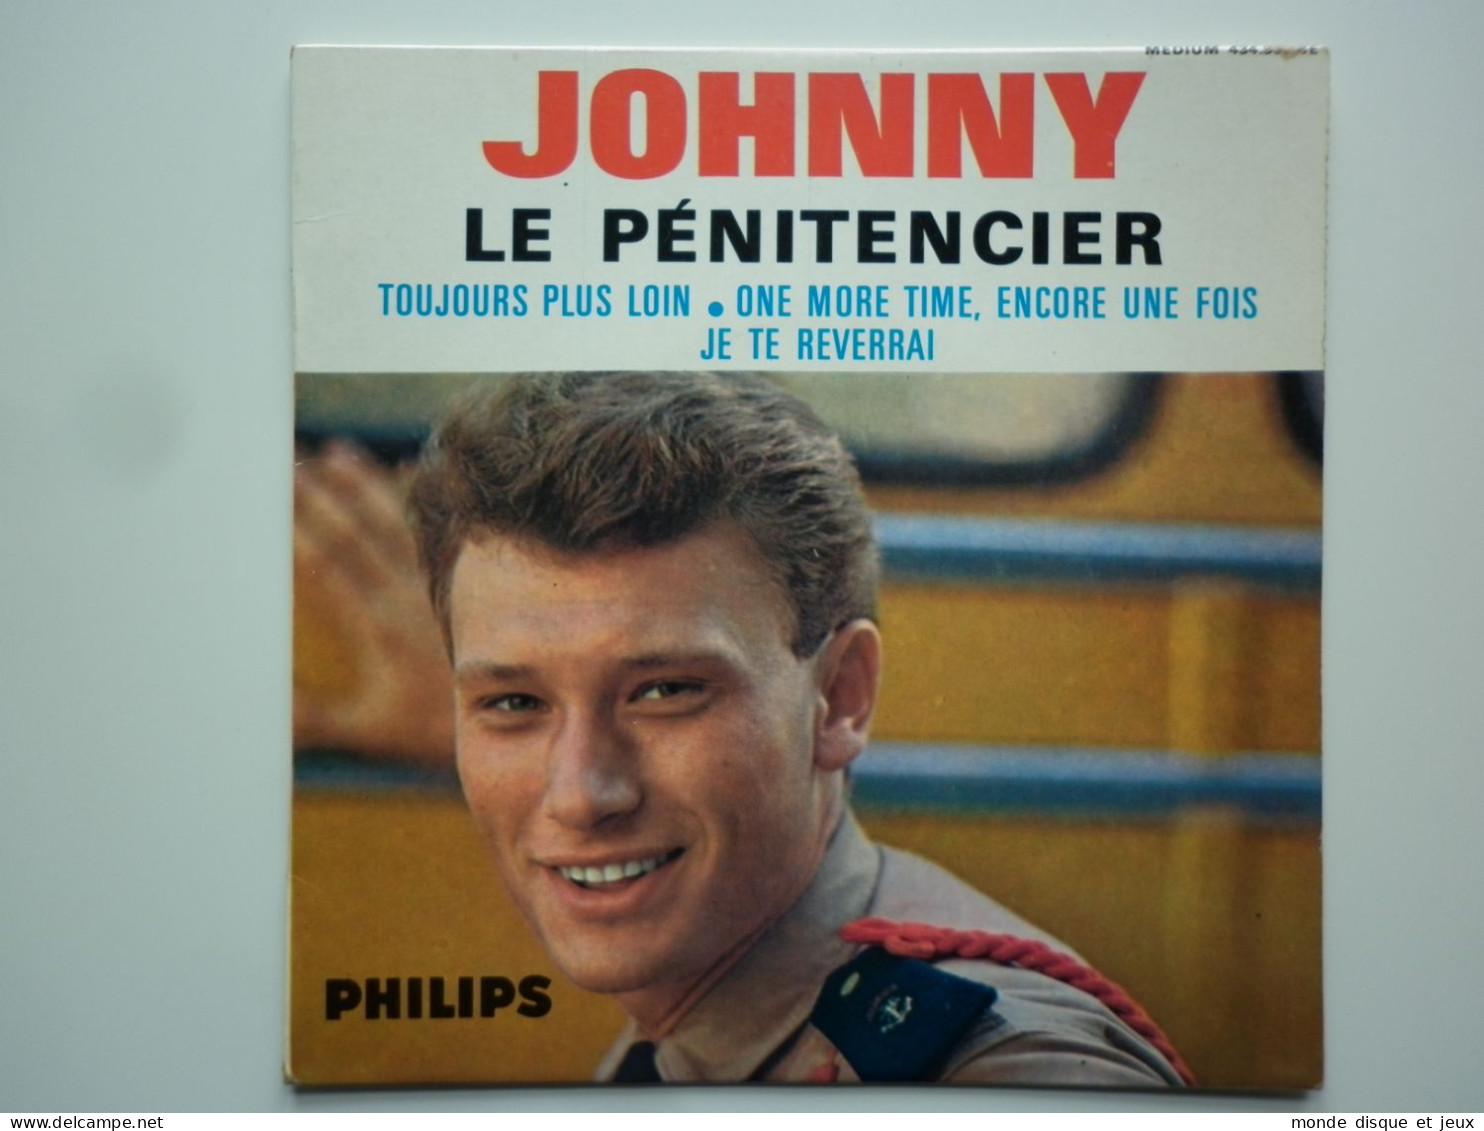 Johnny Hallyday 45Tours EP Vinyle Le Pénitencier Tête à Gauche - 45 Rpm - Maxi-Singles